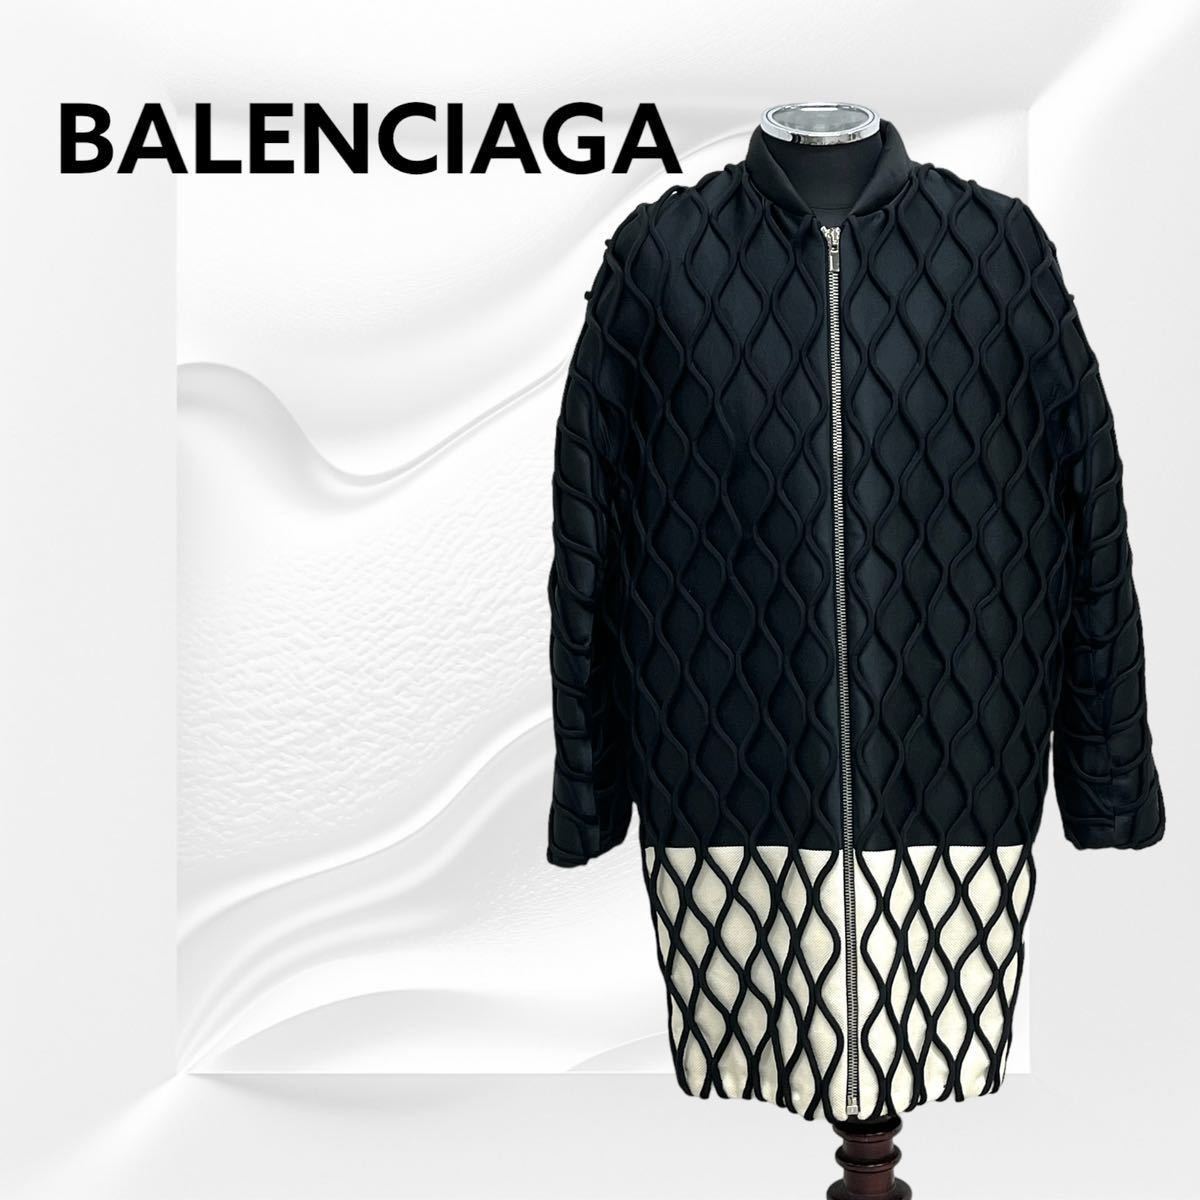 名作 BALENCIAGA バレンシアガ コットンシルク混 バイカラー 中綿入り ジップアップ コート メンズ 374032 TMG07